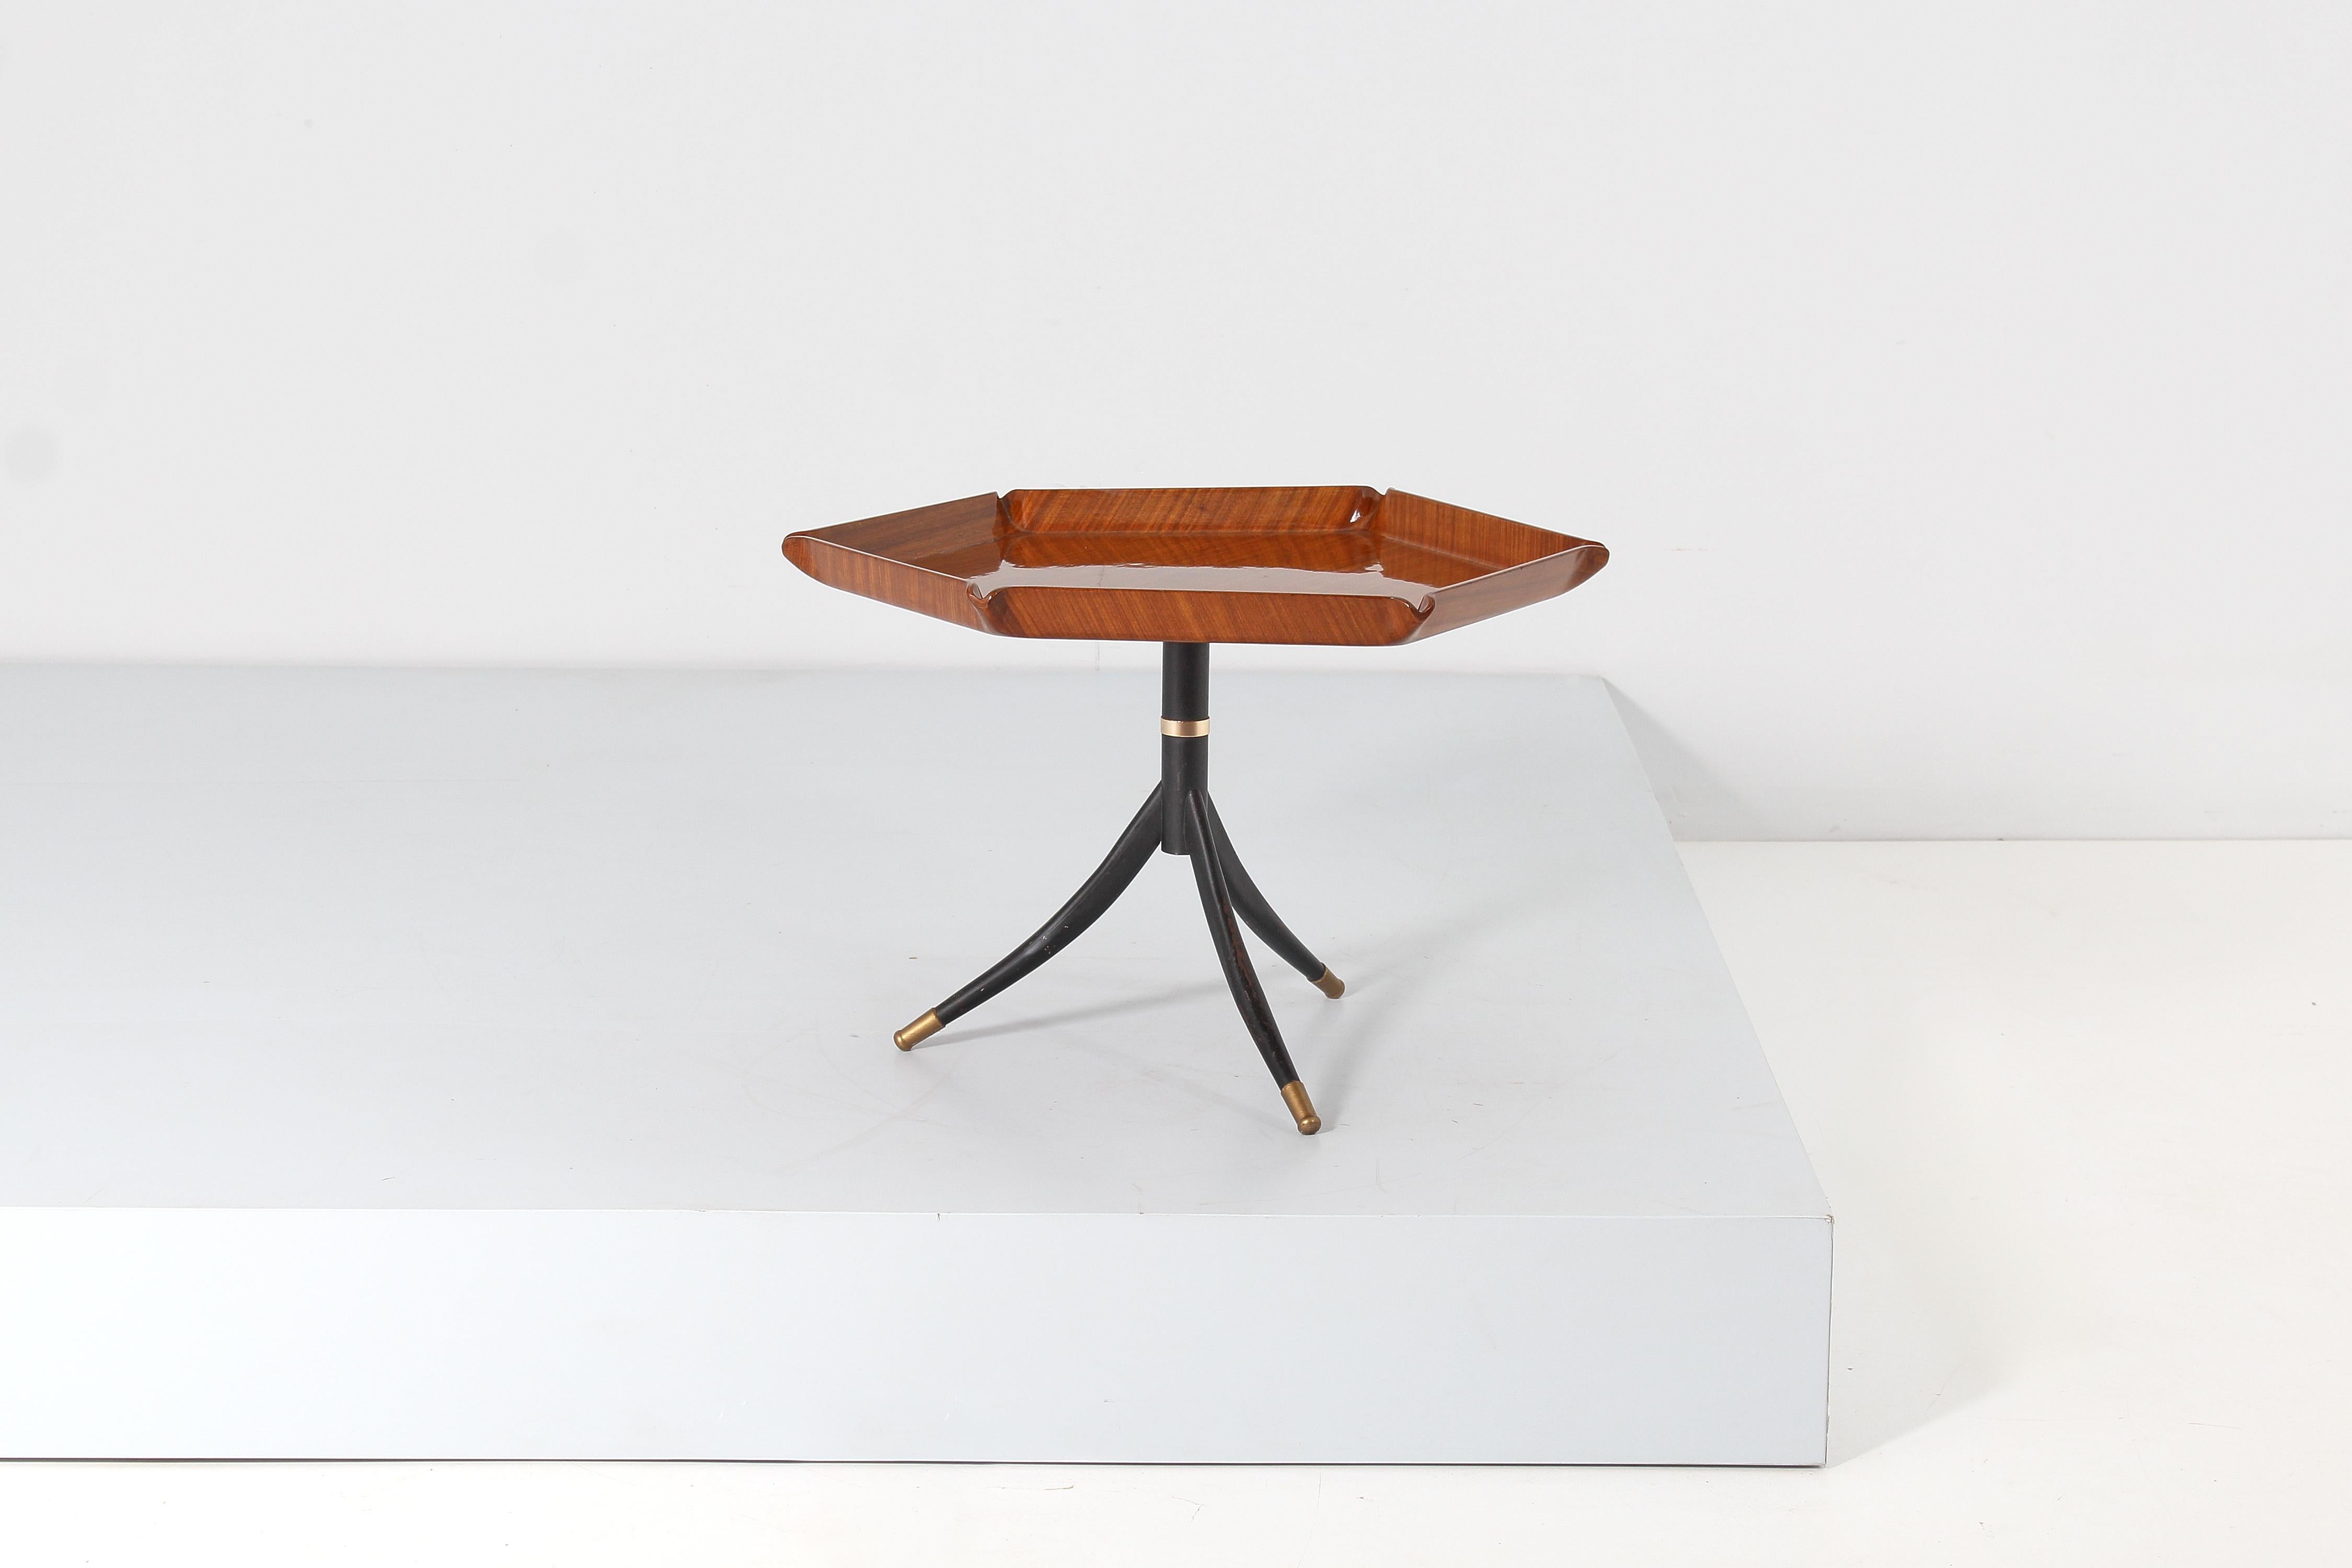 Très originale table basse en bois avec plateau hexagonal en contreplaqué courbé supporté par trois pieds sabres en métal avec embouts en laiton. La table, restaurée, est attribuée à Osvaldo Borsani, Italie dans les années 1950.
Quelques